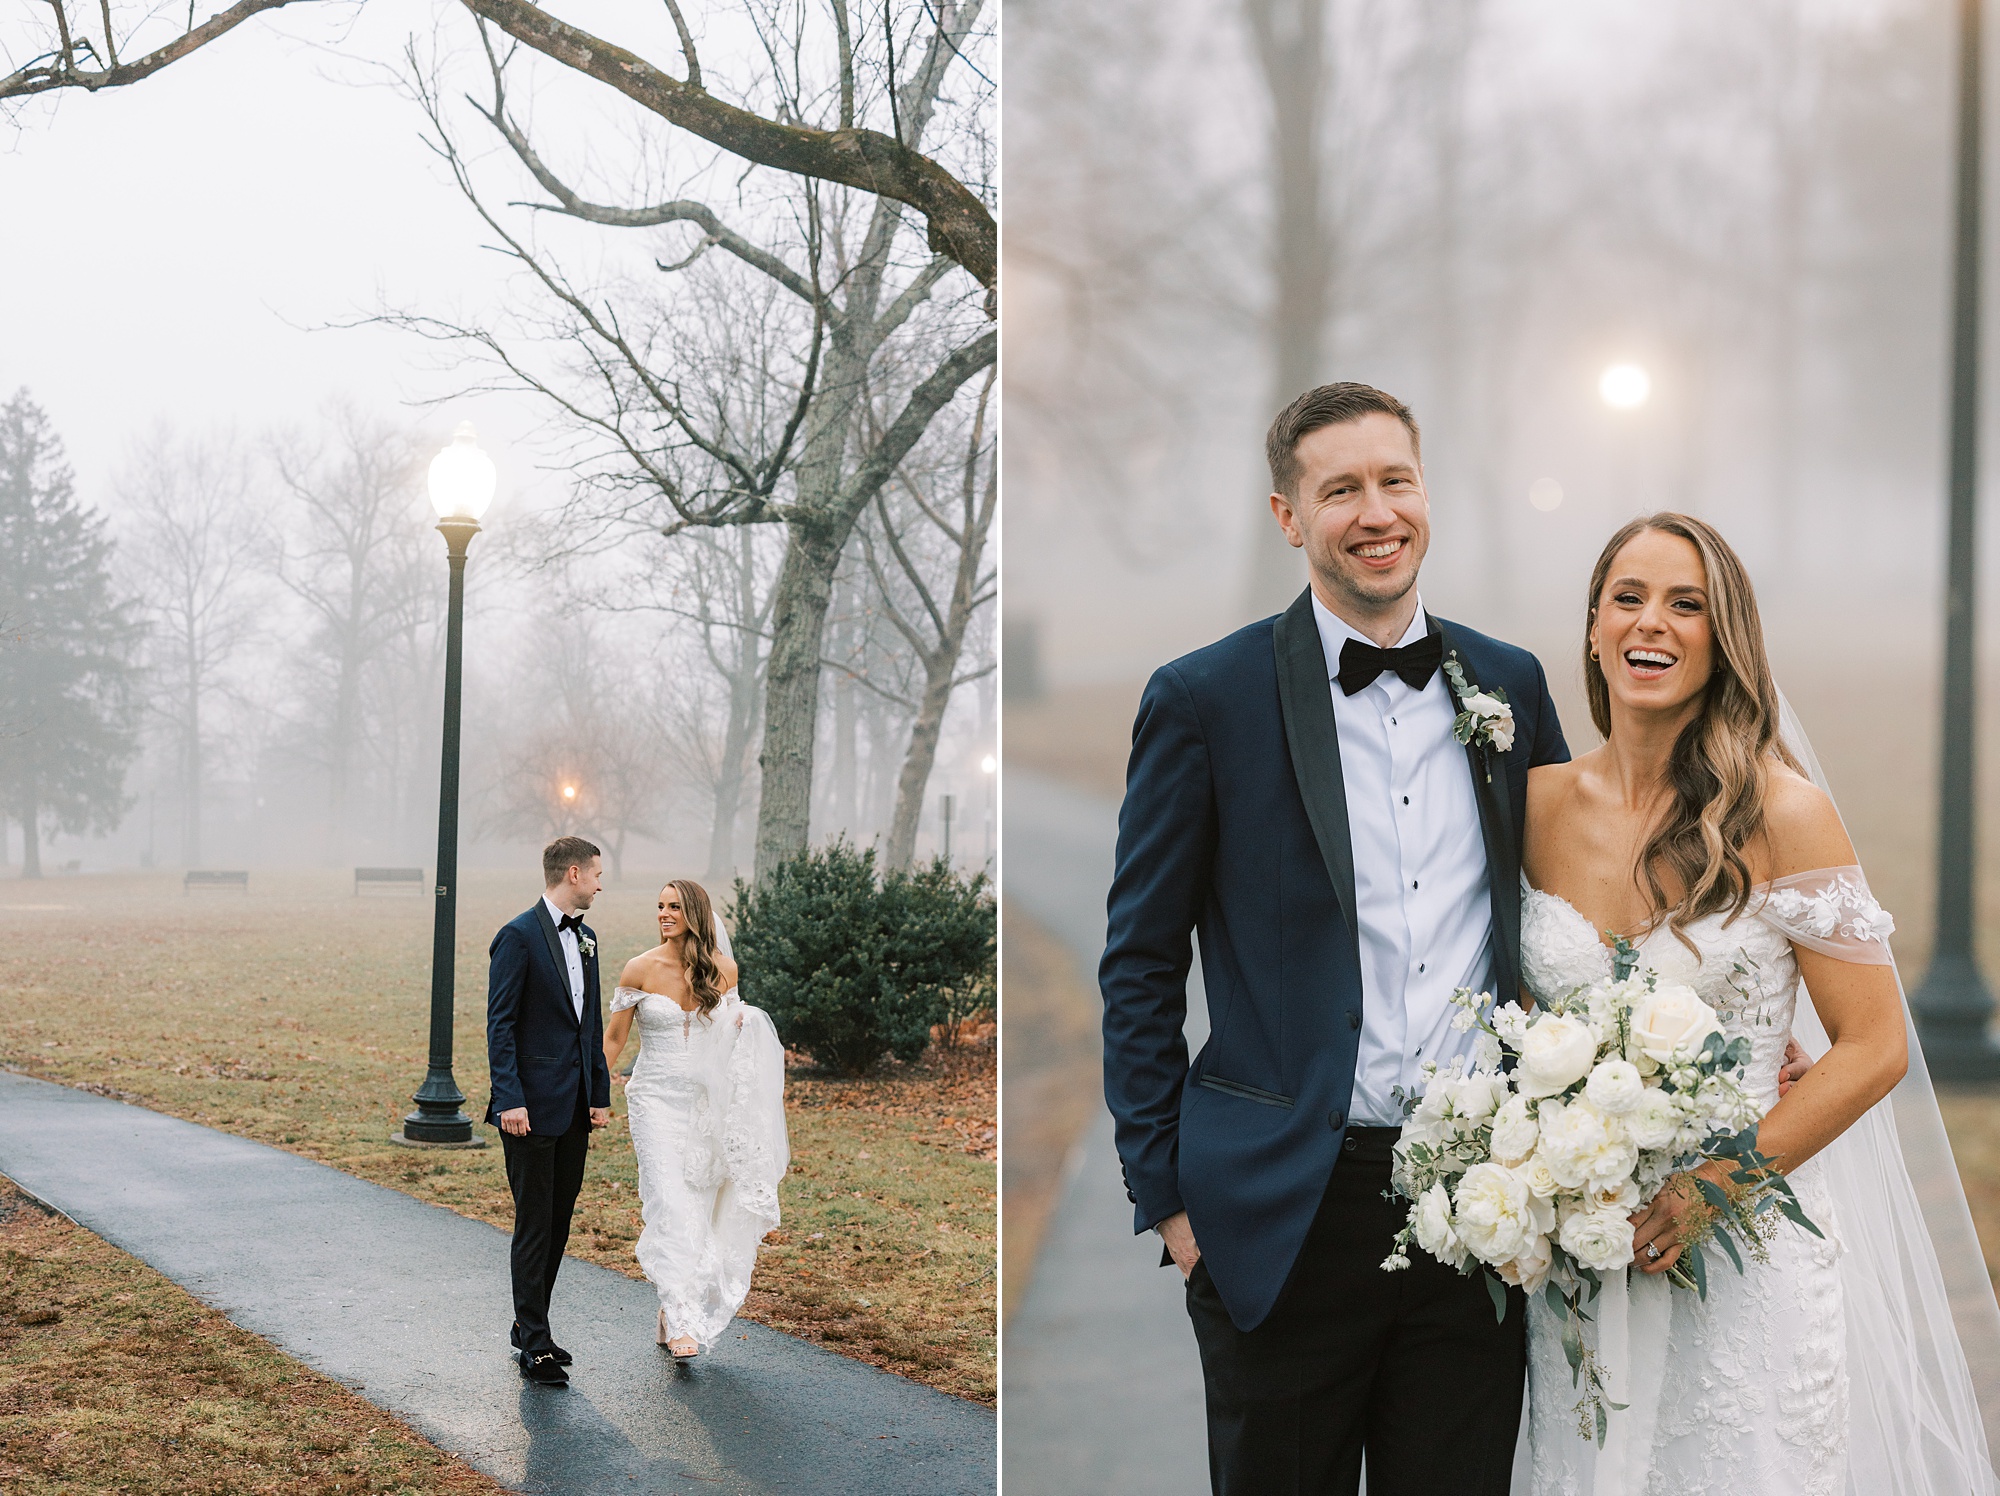 newlyweds hug on sidewalk during foggy wedding portraits 